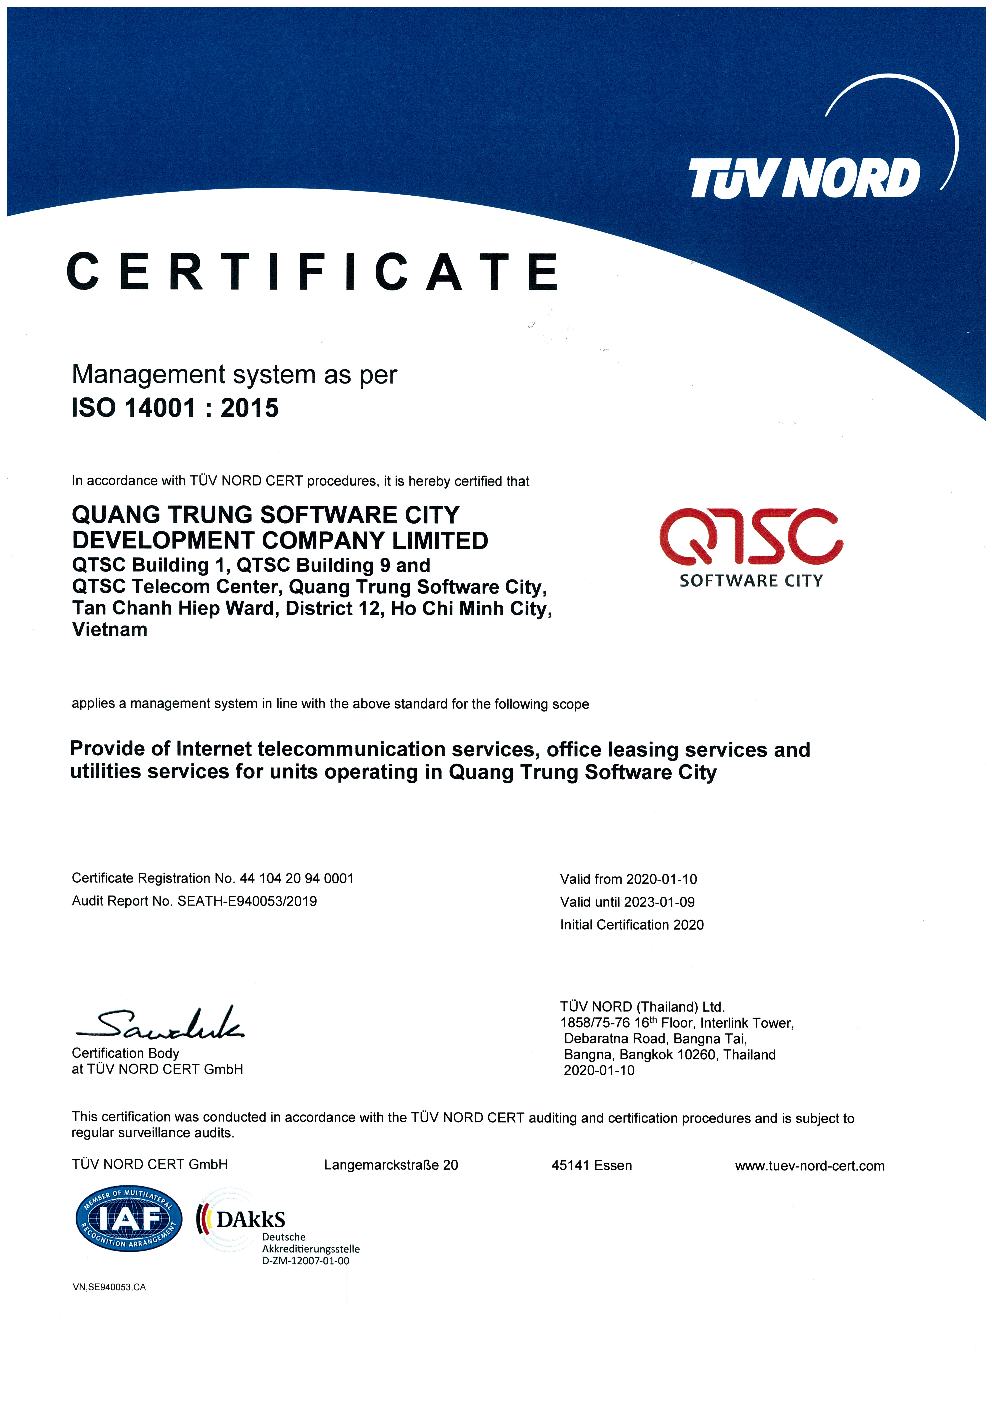 QTSC đã được TUV Nord Cert chứng nhận đáp ứng tiêu chuẩn Hệ thống Quản lý môi trường ISO 14001:2015